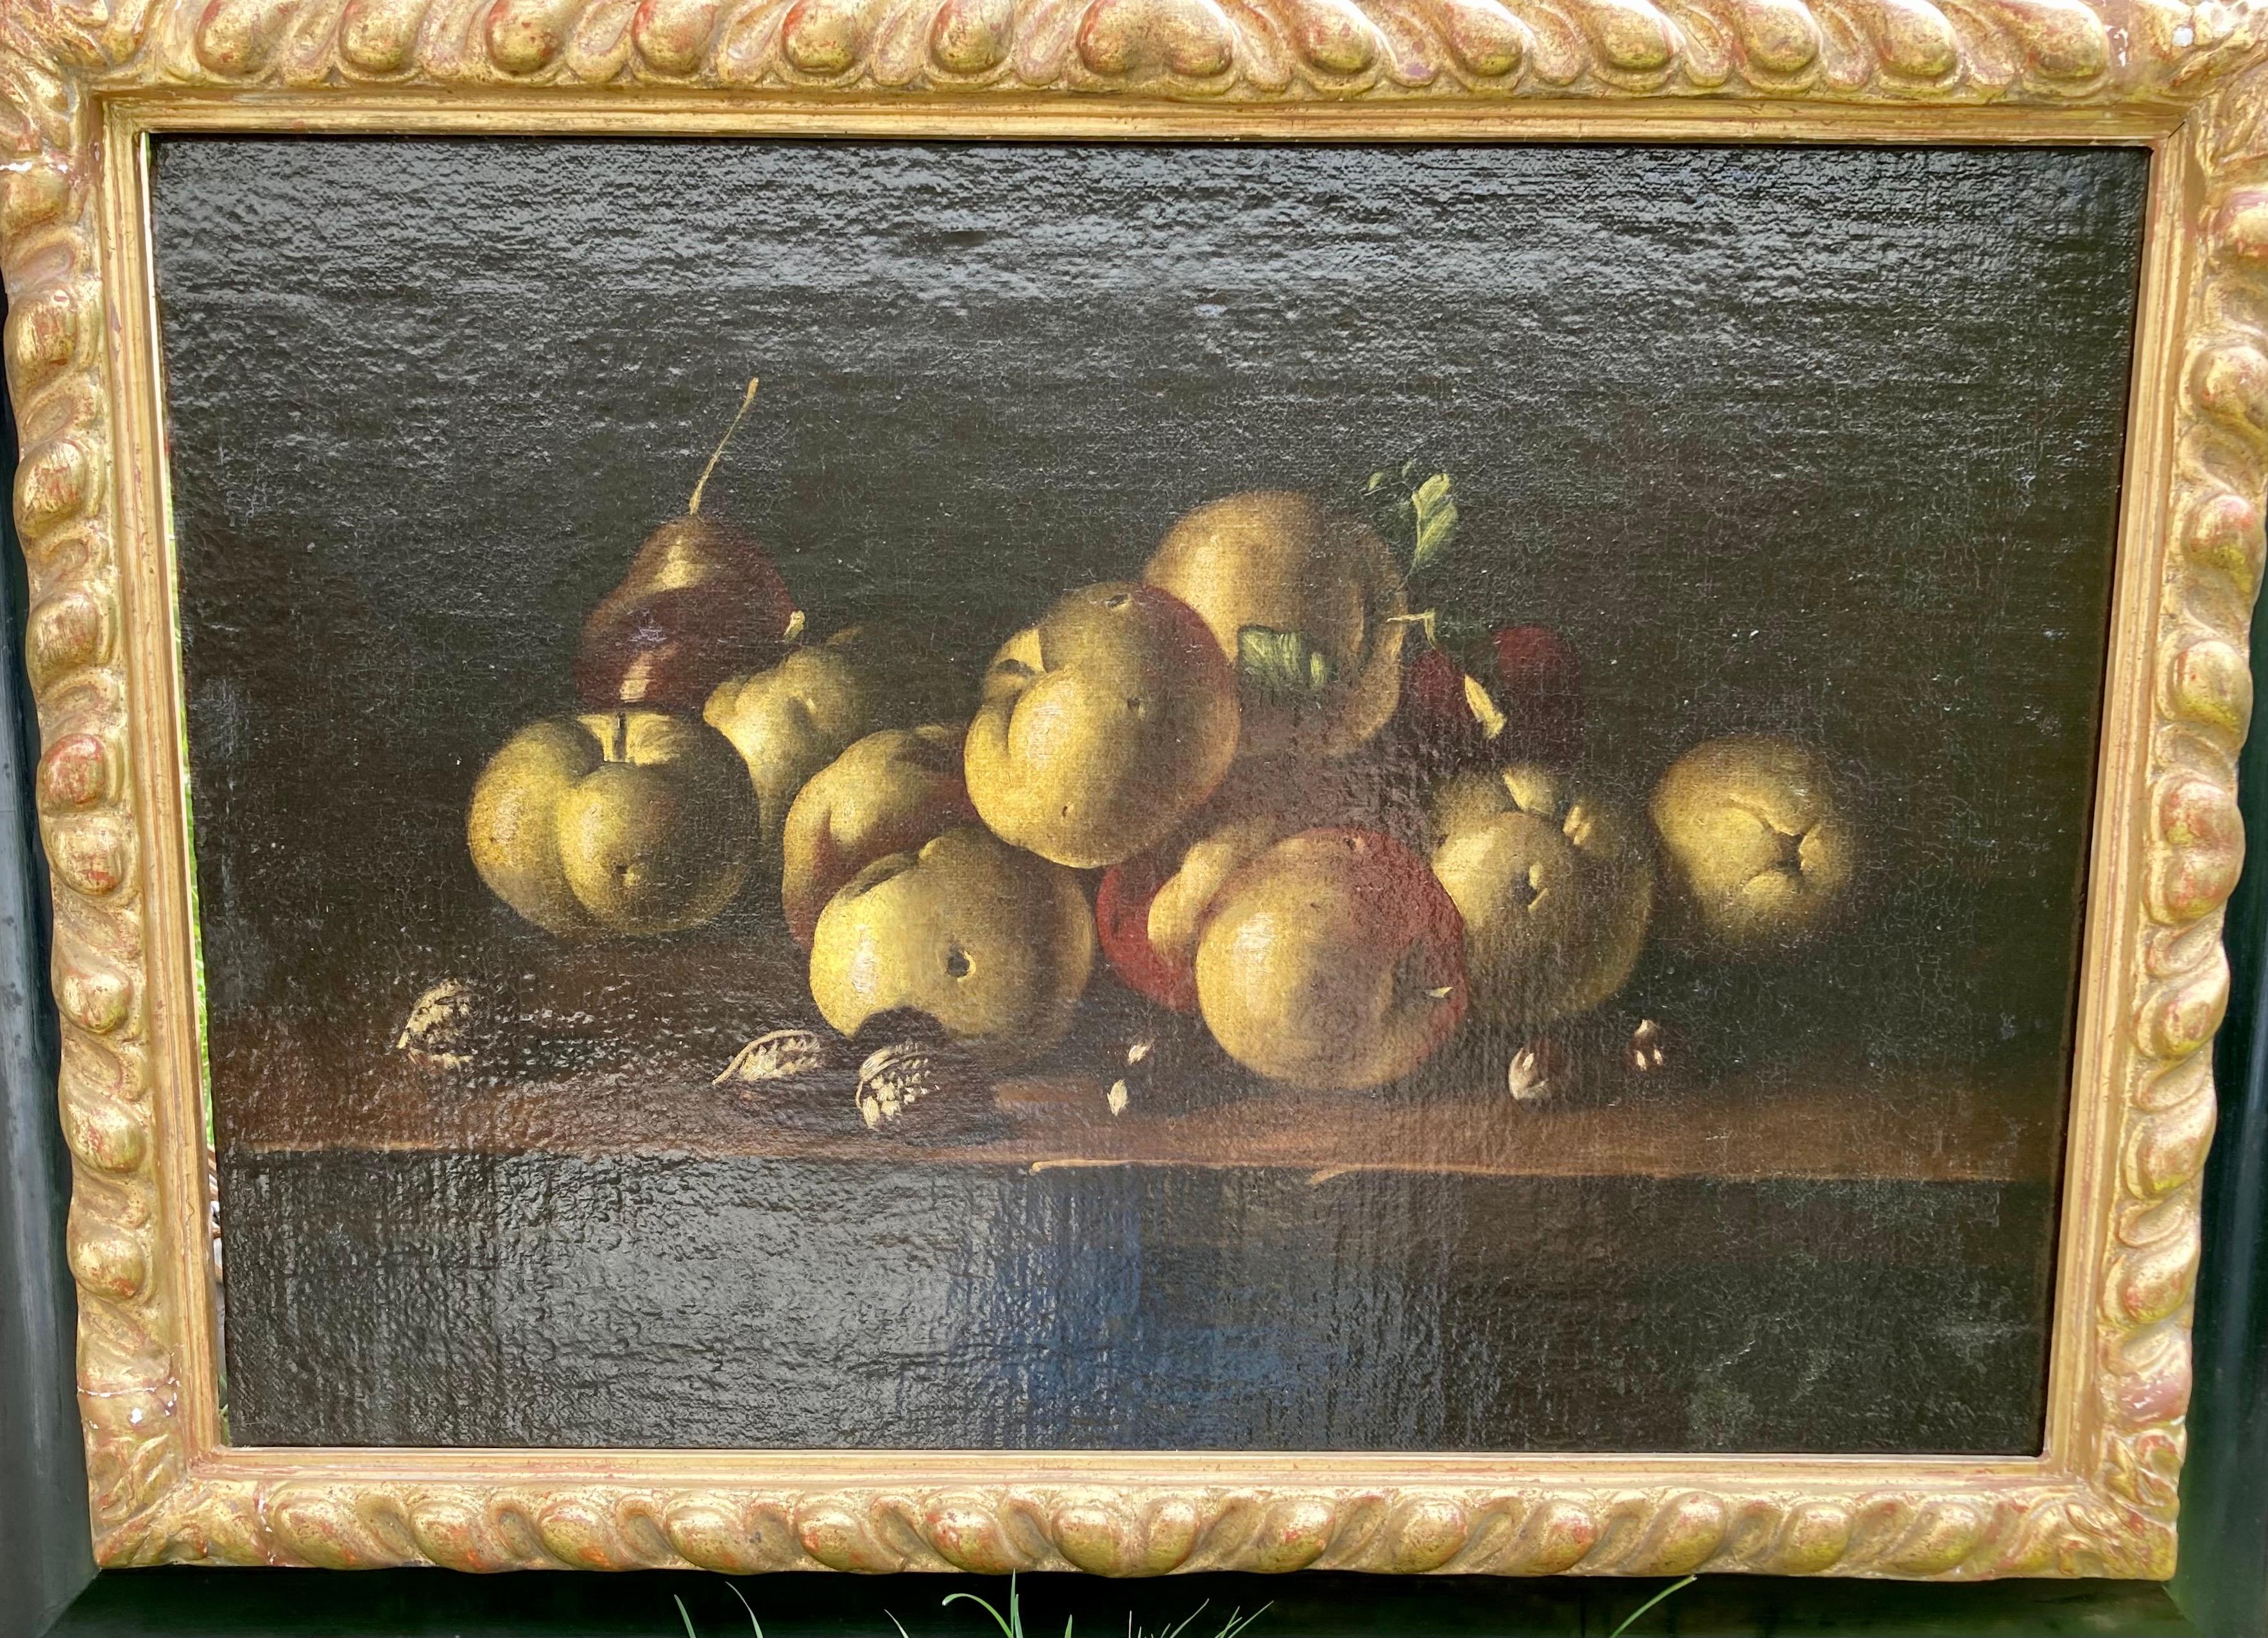 Juan Sánchez Cotán (1560 - 1627) était l'un des plus importants peintres de natures mortes en Espagne et au-delà. Il a développé un certain type de nature morte avec une niche en pierre et des fruits et objets suspendus placés à l'intérieur. Ils